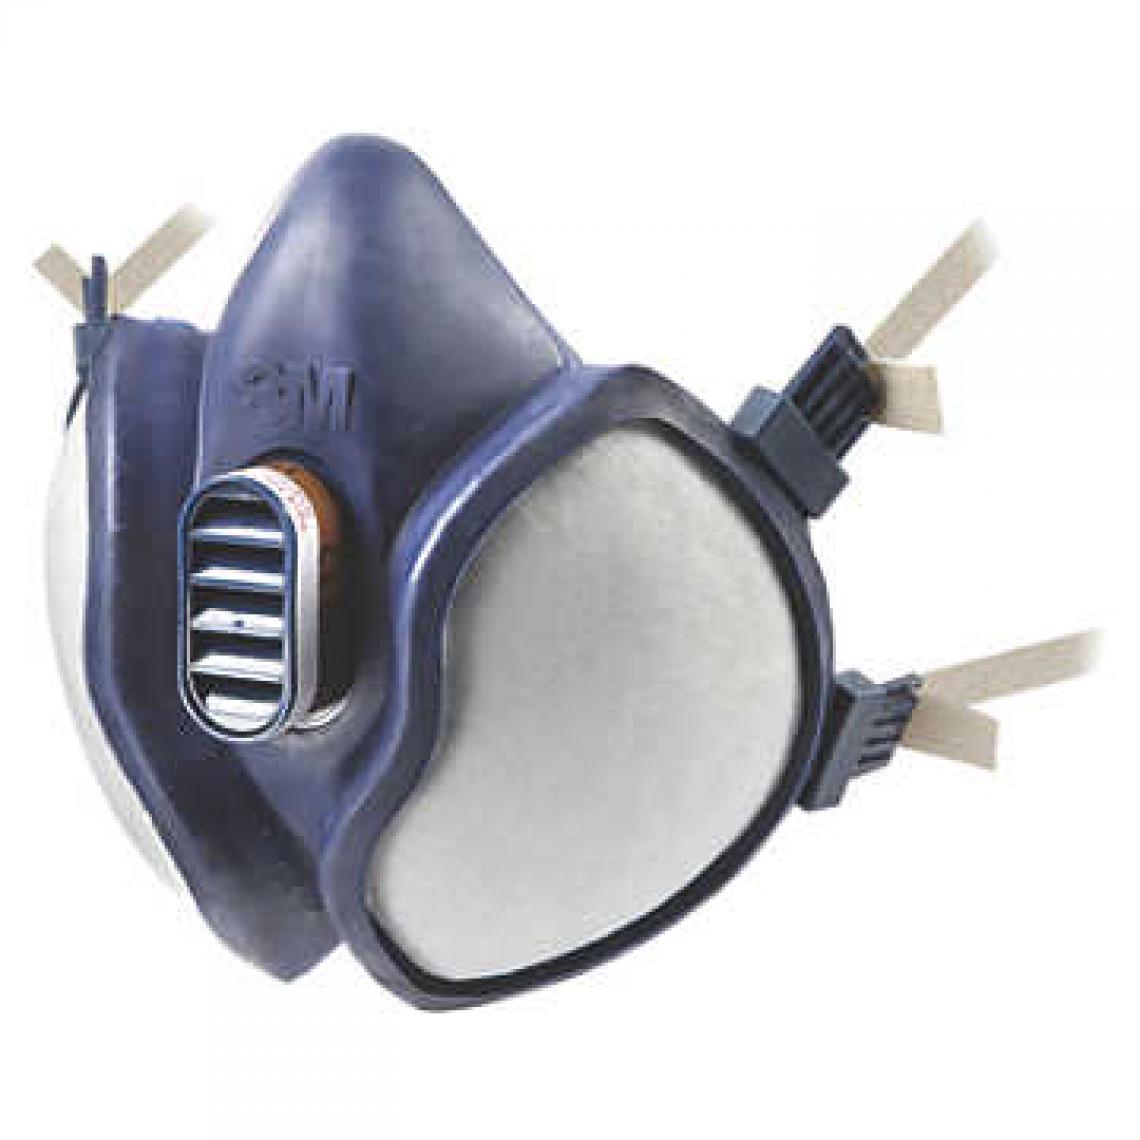 3M - Demi masque 3M - antigaz - série 4000 - norme FFA2P3D - 4255A00 - Protections tête